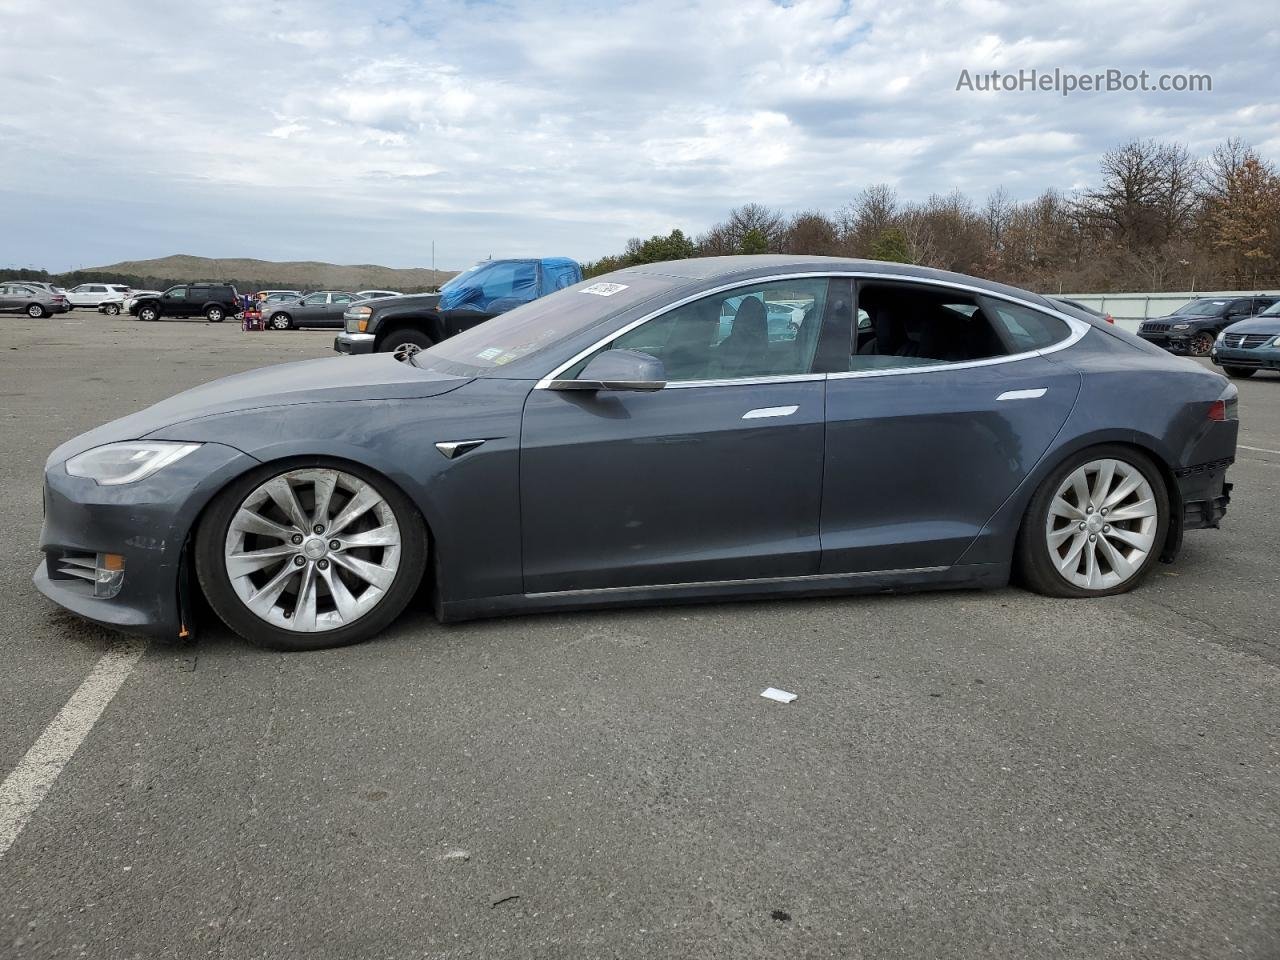 2019 Tesla Model S  Charcoal vin: 5YJSA1E23KF342830